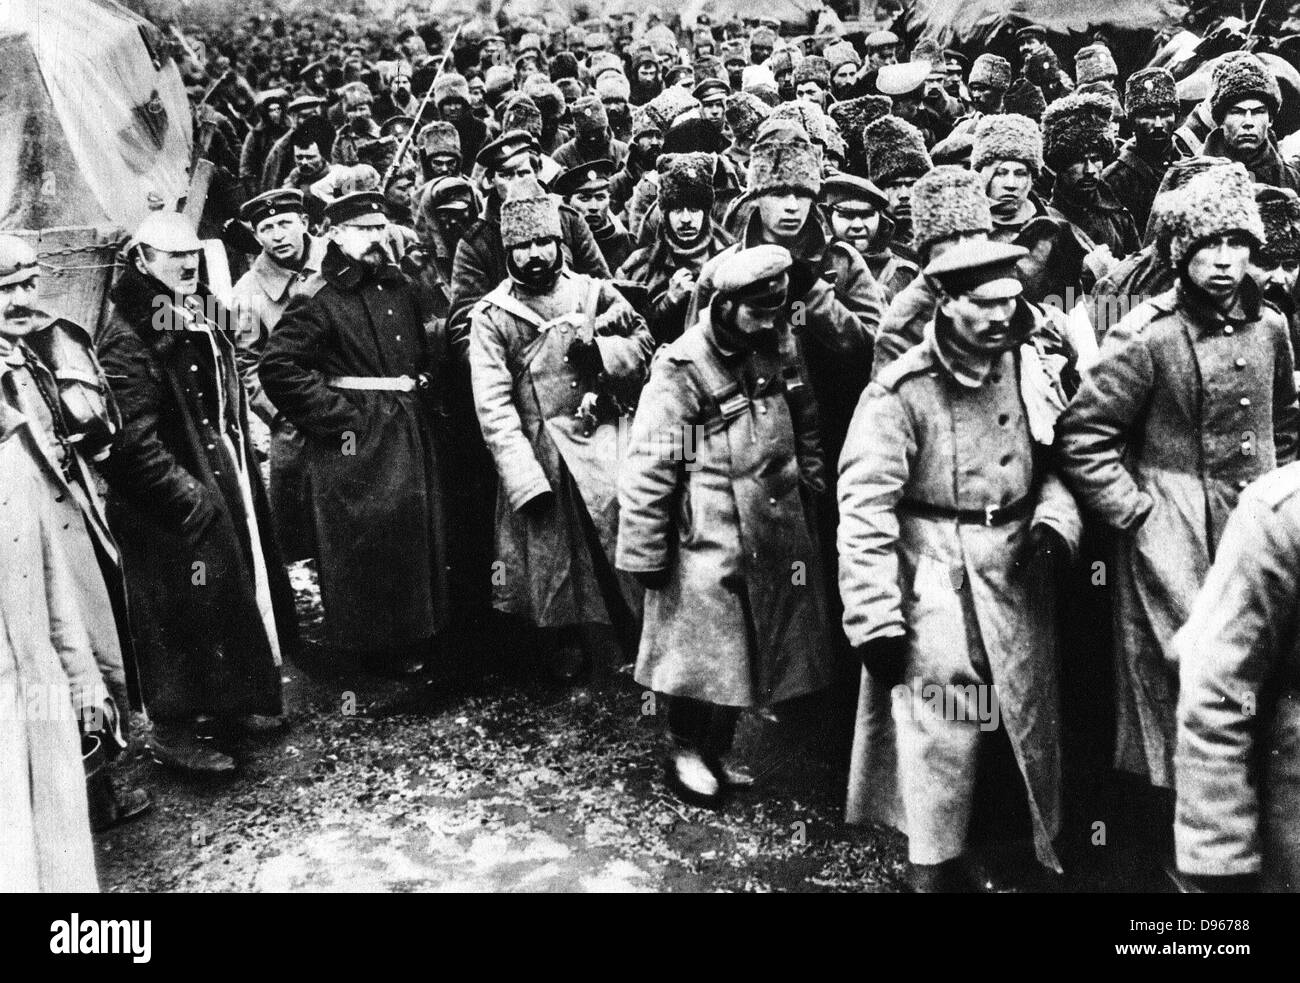 Les russes faits prisonniers par l'Allemagne sur le front de l'Est, la Première Guerre mondiale. Parmi eux, nombreux sont les Cosaques dans leurs chapeaux de fourrure. Banque D'Images